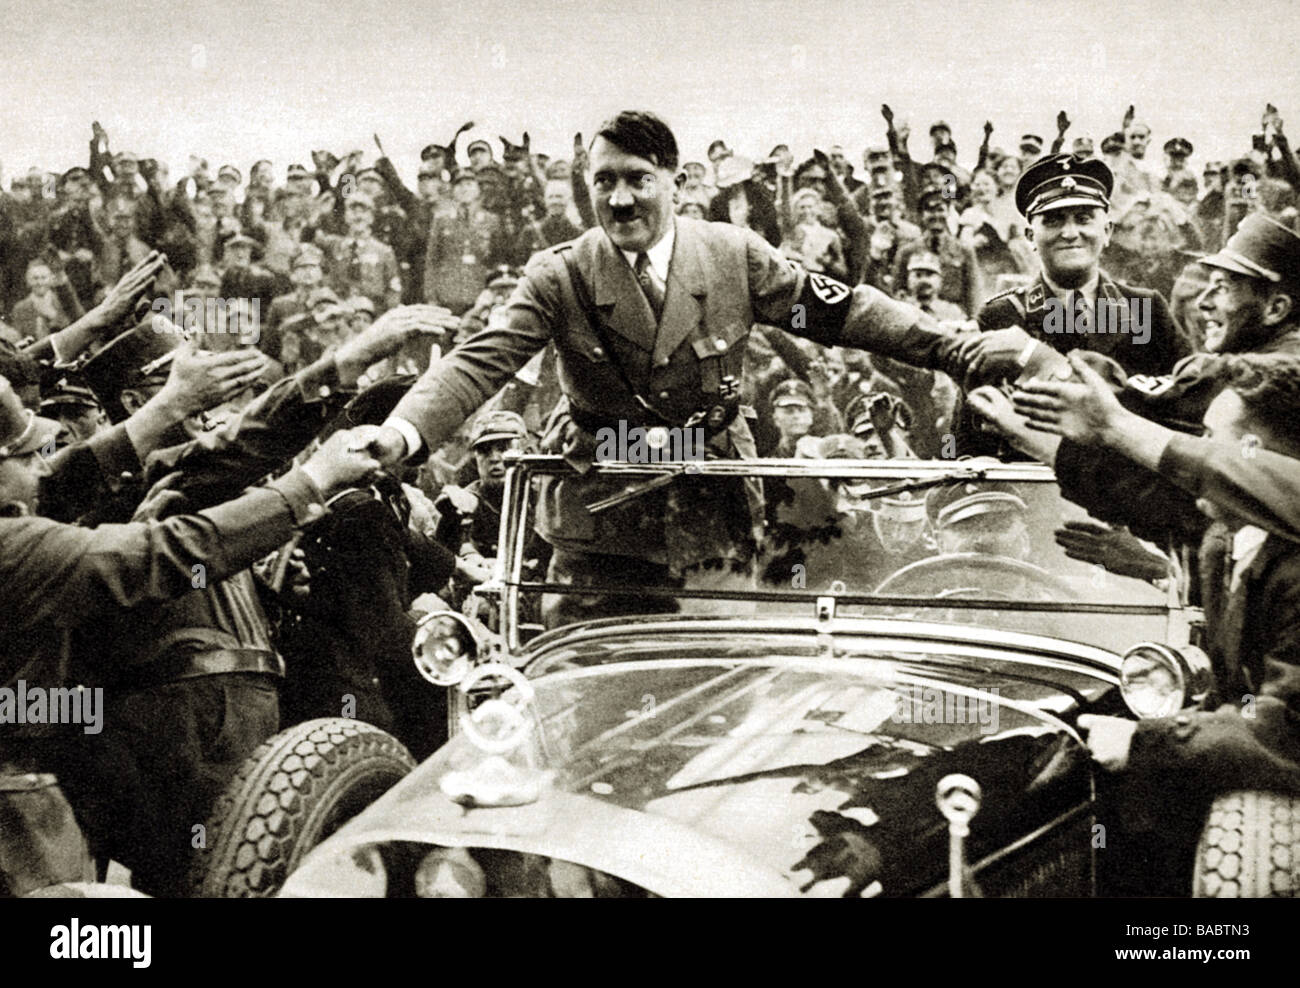 Hitler, Adolf, 20.4.1889 - 30.4.1945, politicien allemand (NSDAP), chancelier de Fuehrer et Reich depuis 1933, demi-longueur, ses partisans lui donnant un accueil enthousiaste, Nuremberg 1933, Banque D'Images